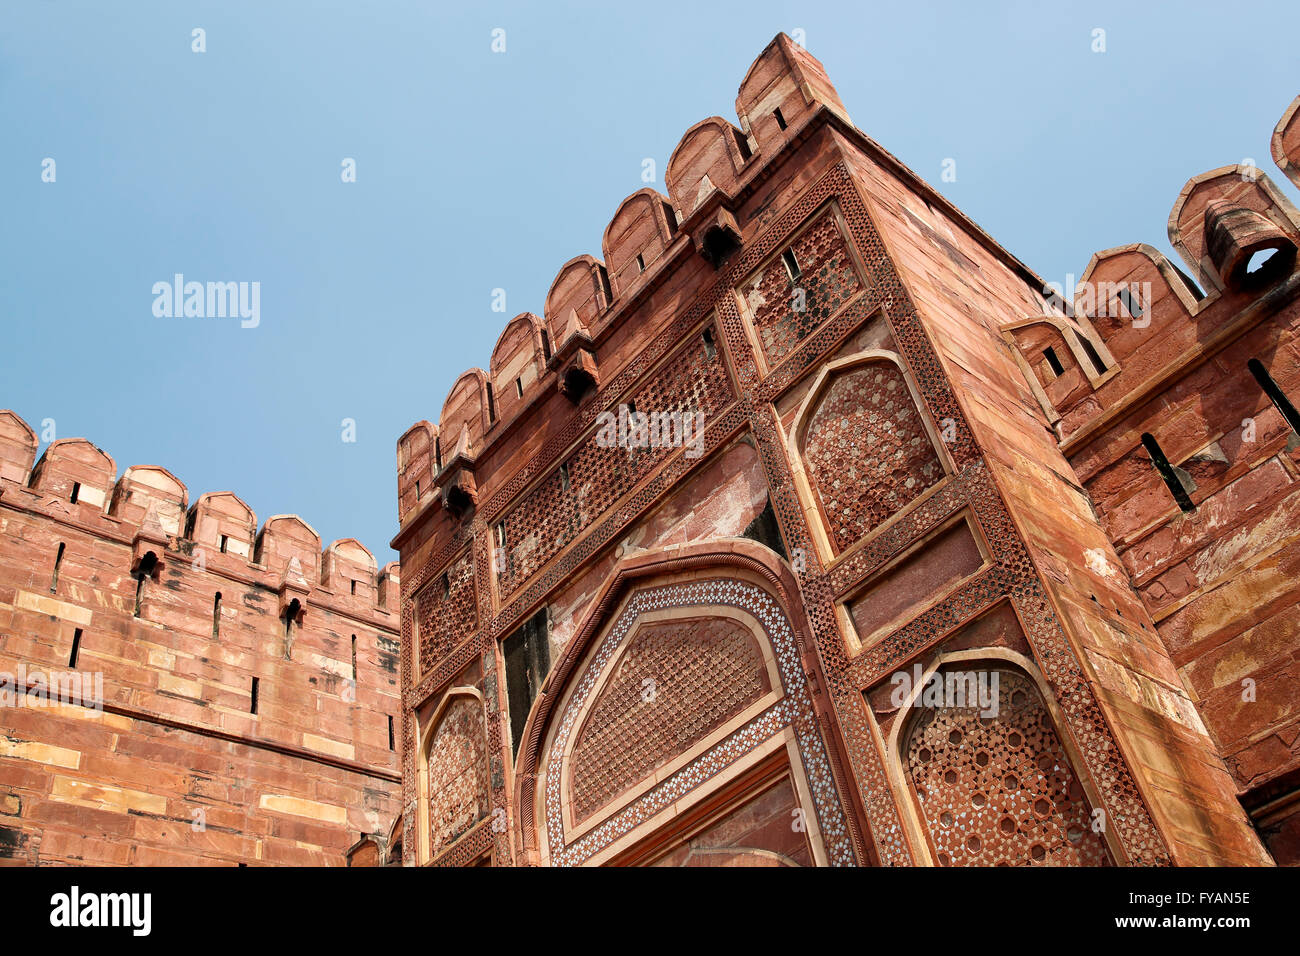 Turm, Agra Fort, auch bekannt als Red Fort, Agra, Uttar Pradesh, Indien Stockfoto